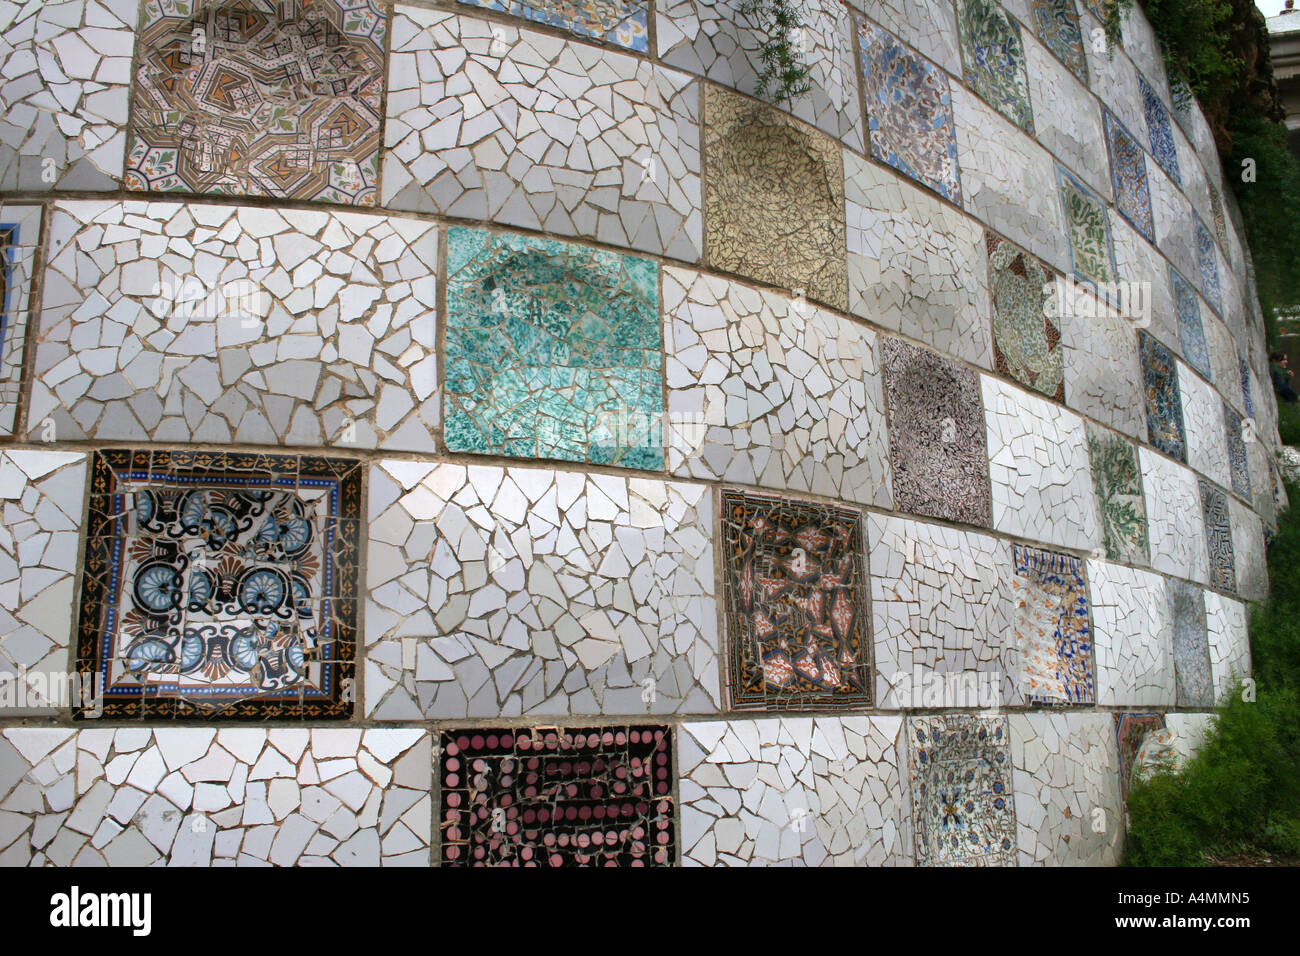 Près d'une partie d'un mur en mosaïque de Gaudi dans son parc à Barcelone, Espagne Banque D'Images